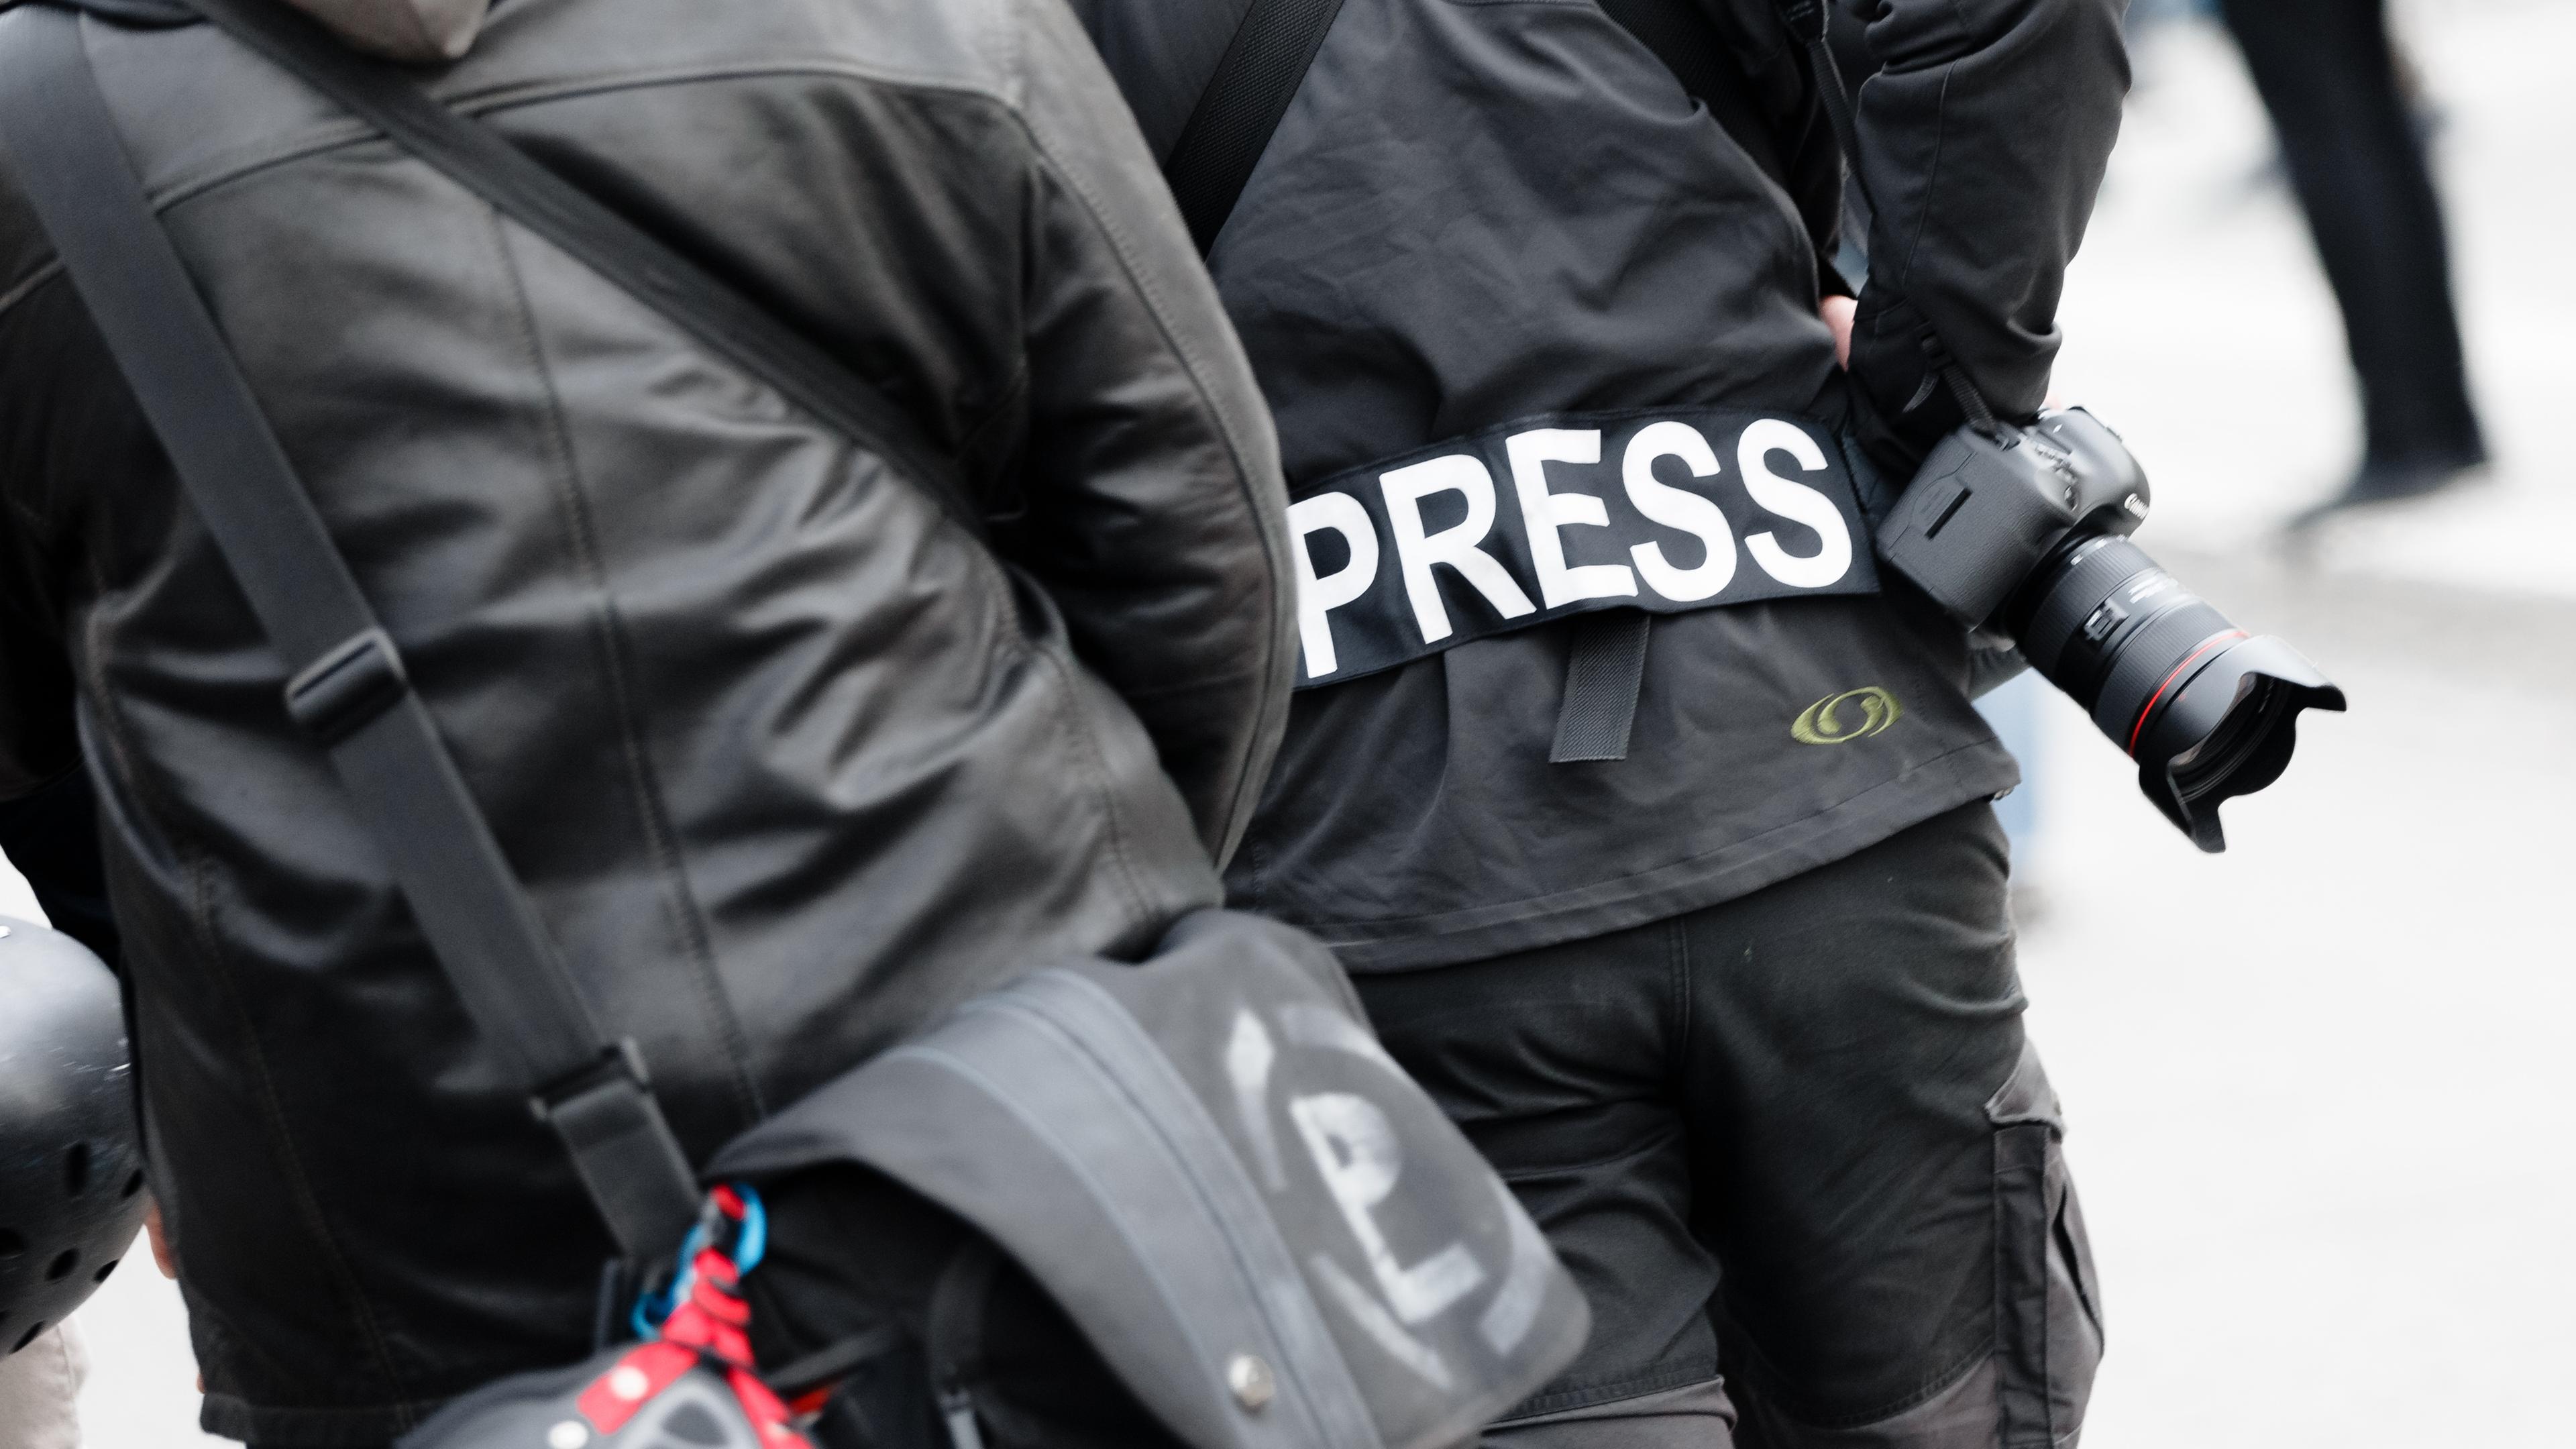 Ein Fotoreporter trägt auf einer Demonstration einen Aufnäher mit dem Text "PRESS" auf seiner Jacke.